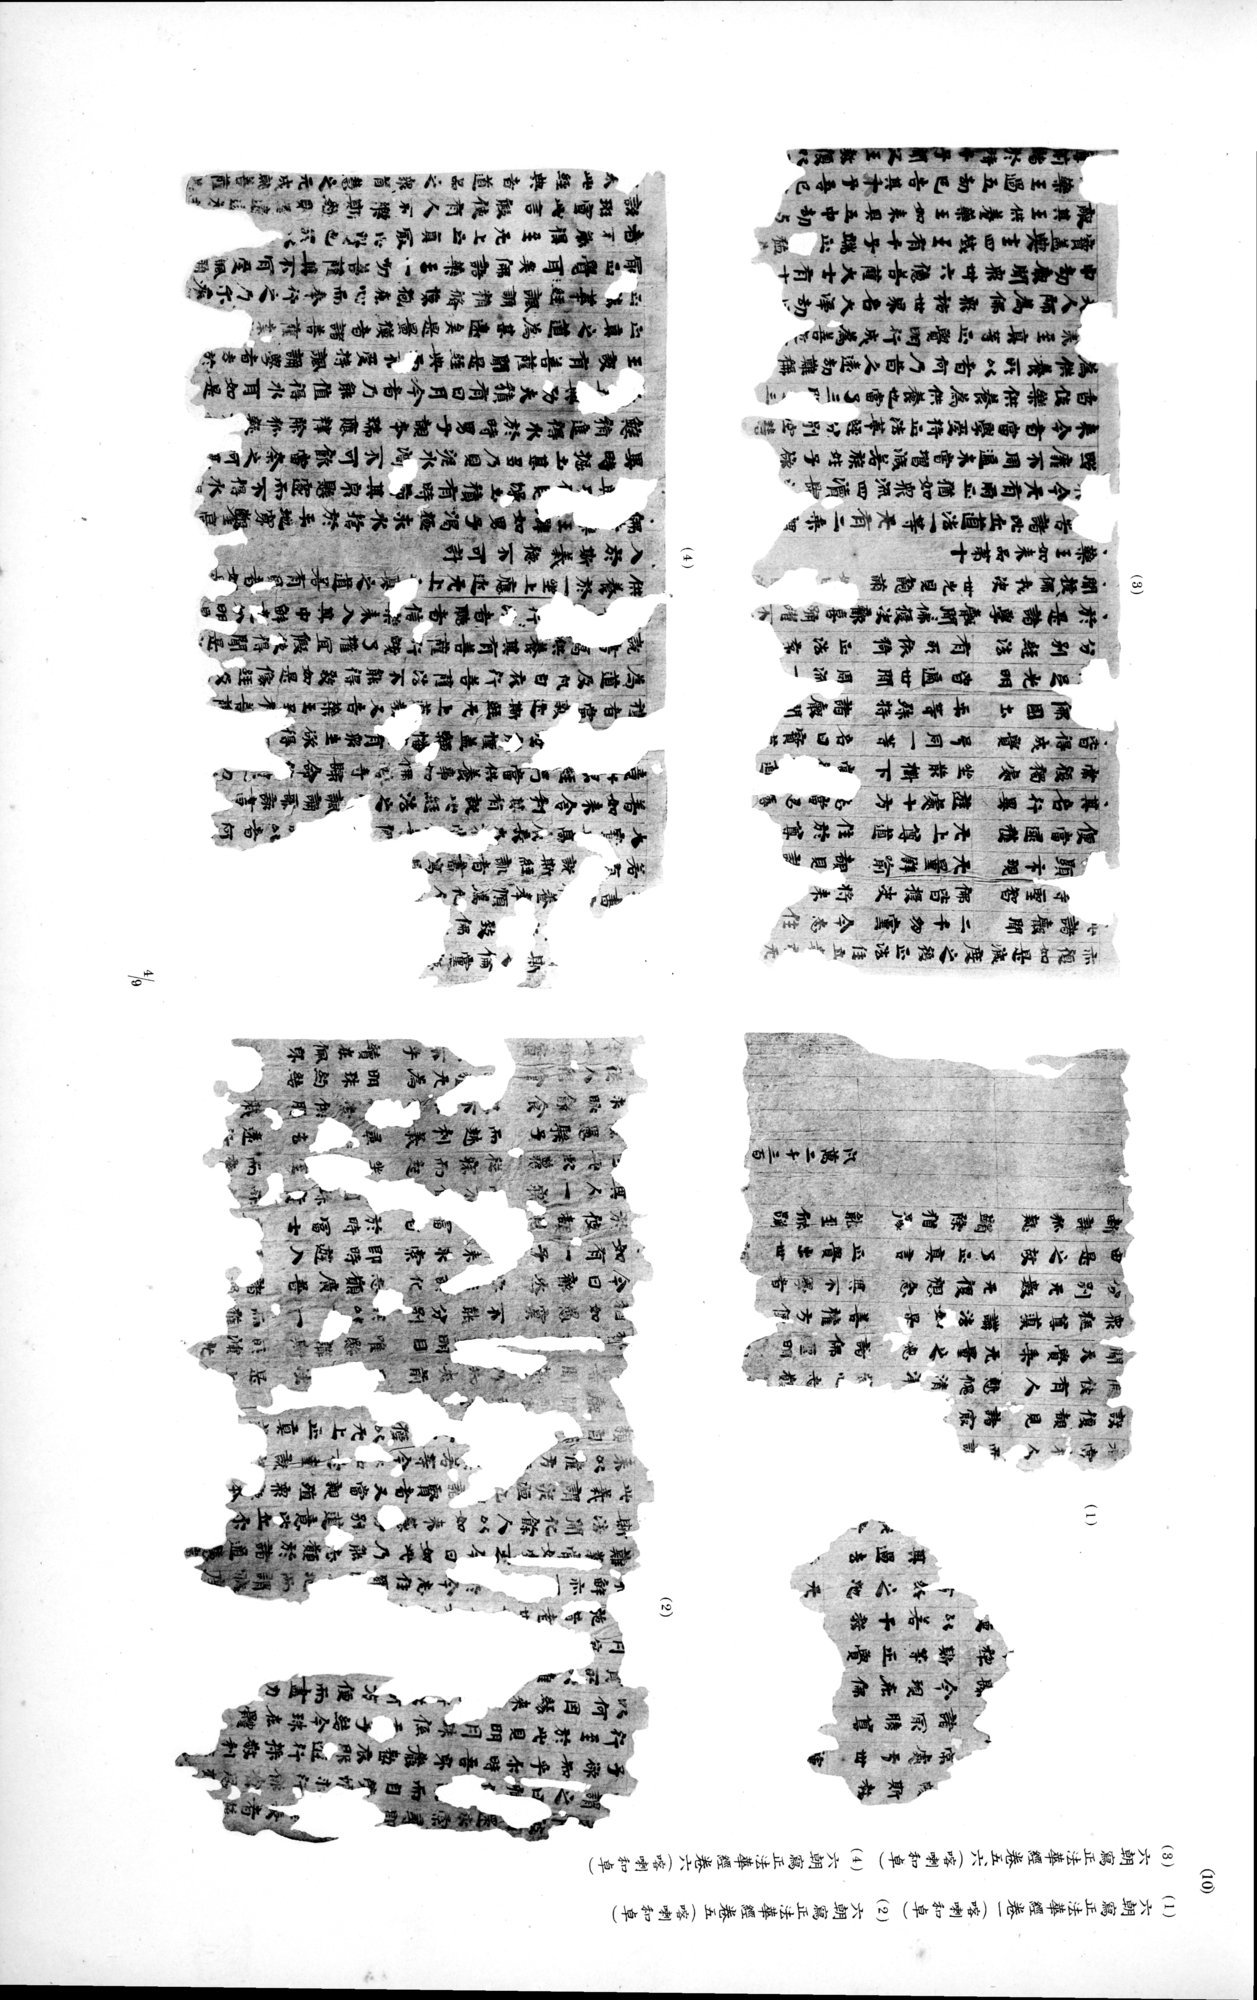 西域考古図譜 : vol.2 / Page 35 (Grayscale High Resolution Image)